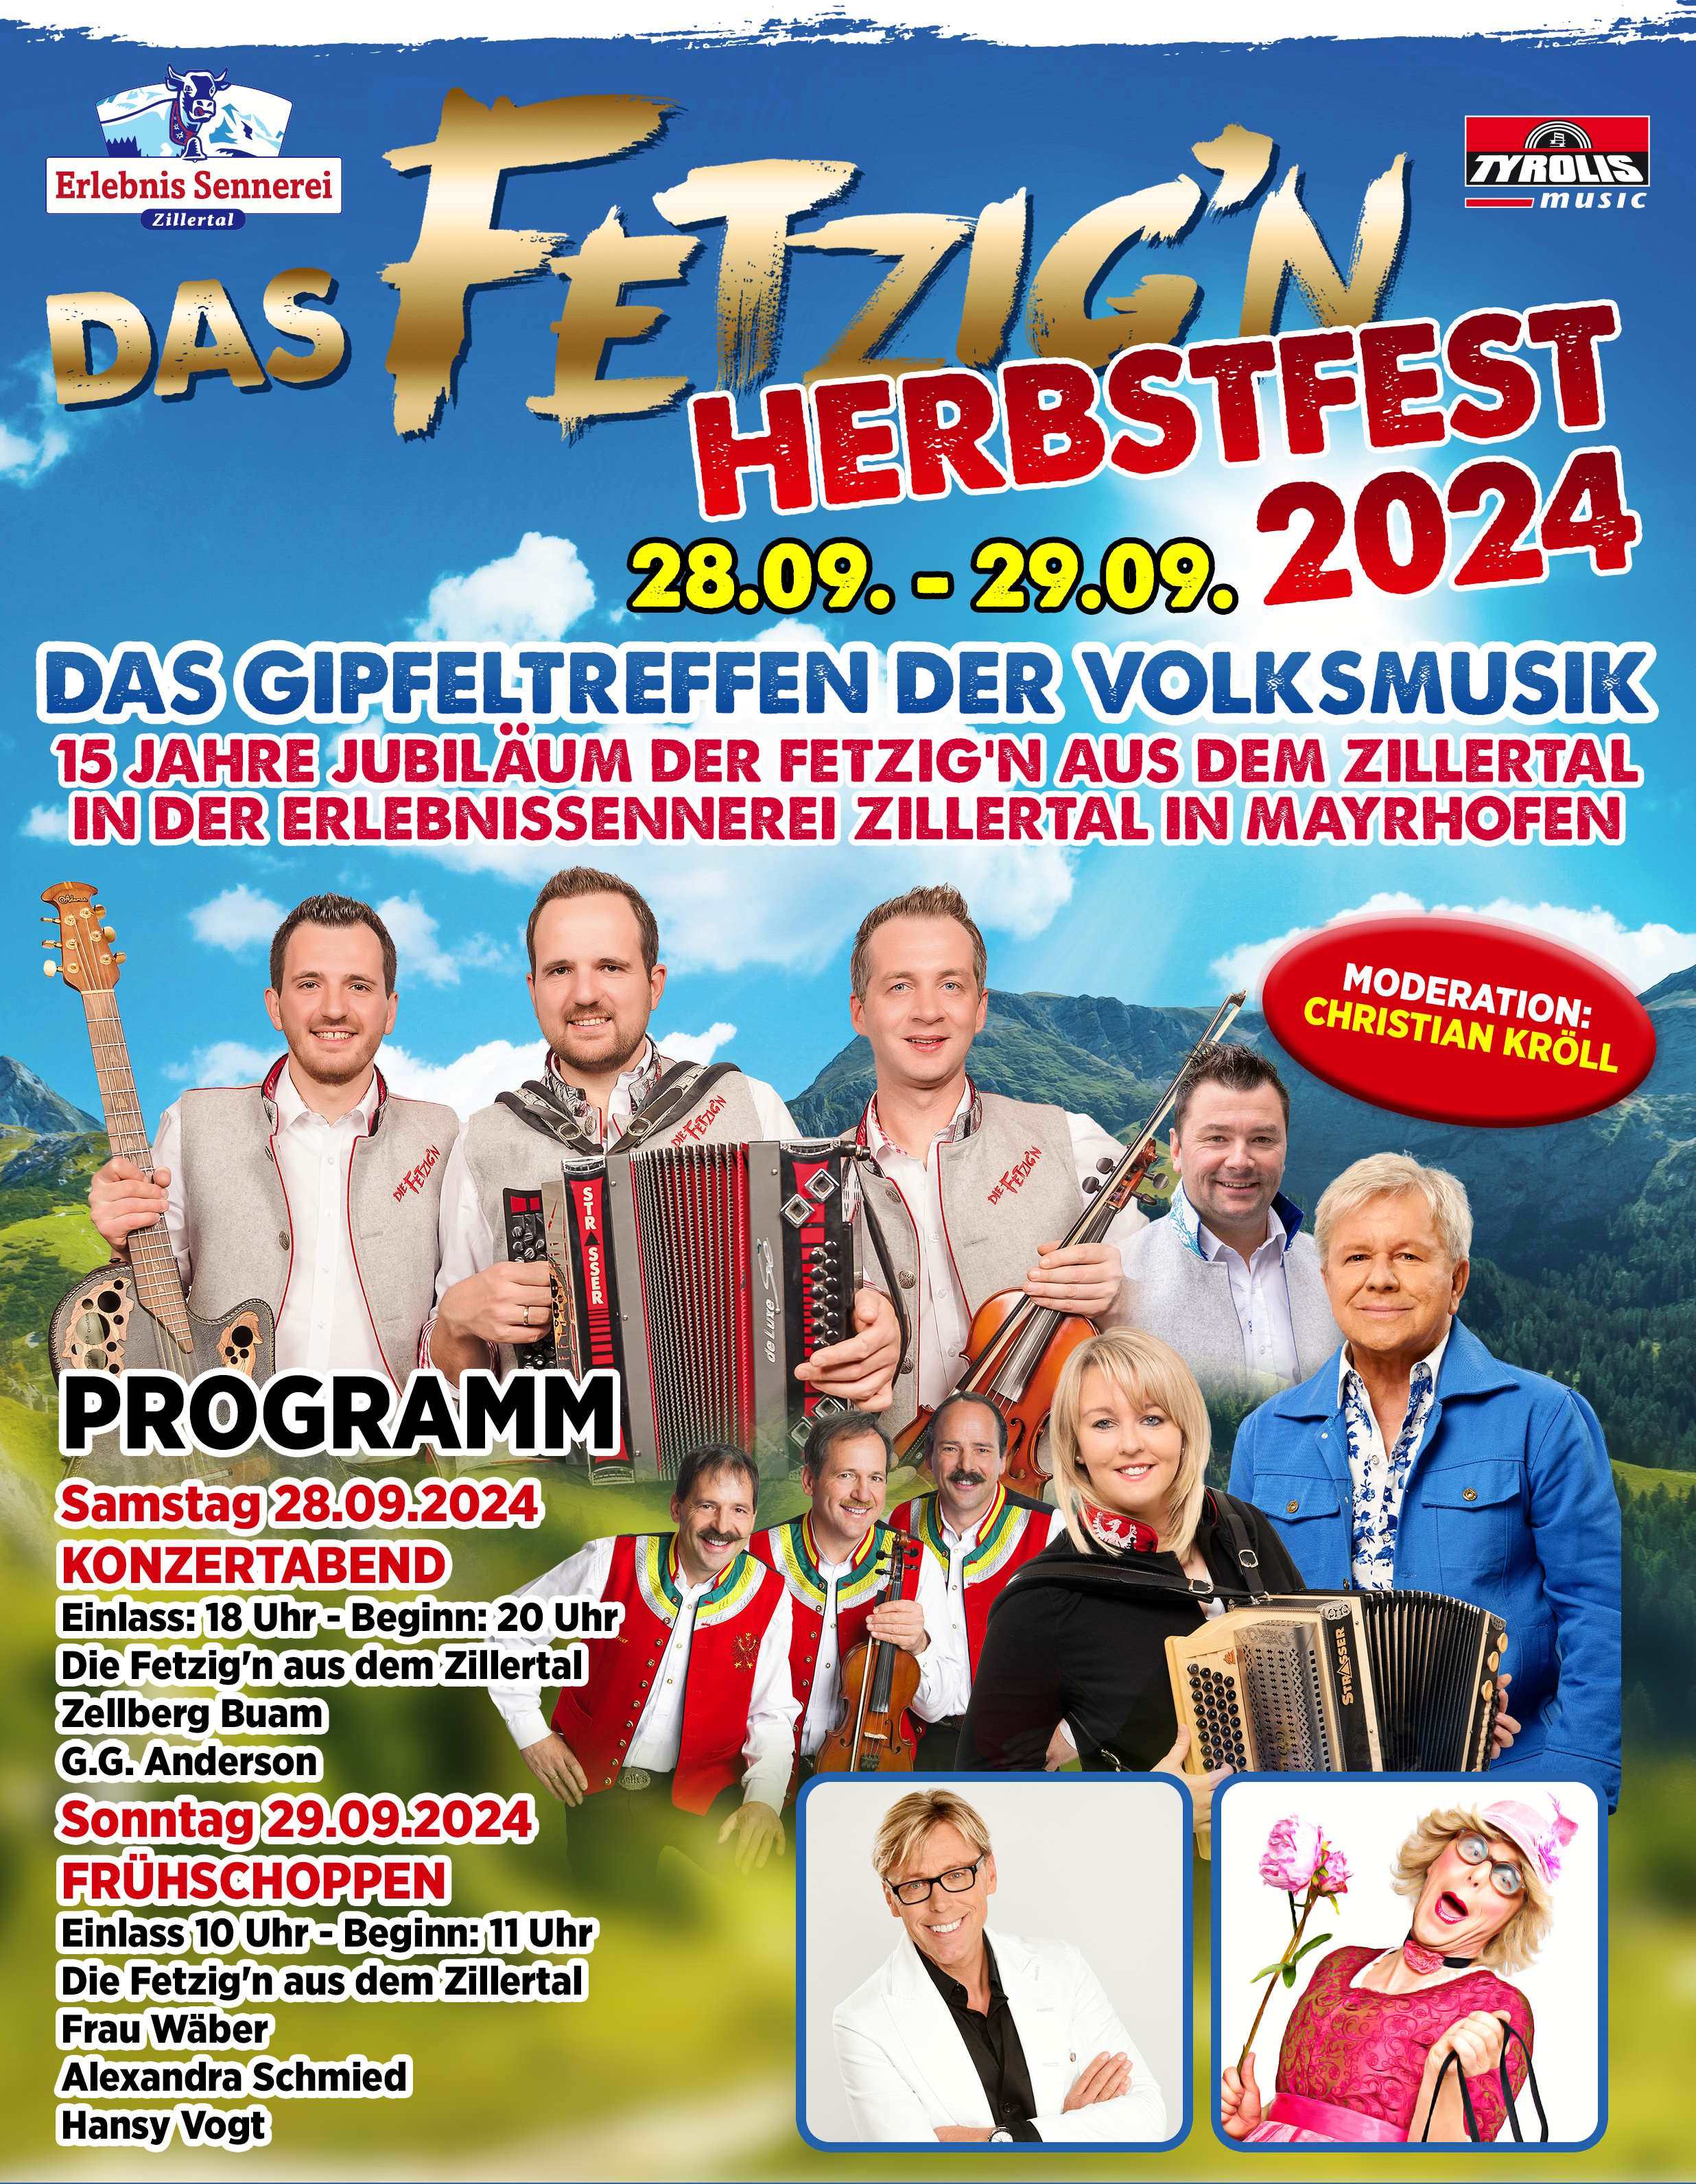 A4 Flyer Fetzign Herbstfest 2024 cut1